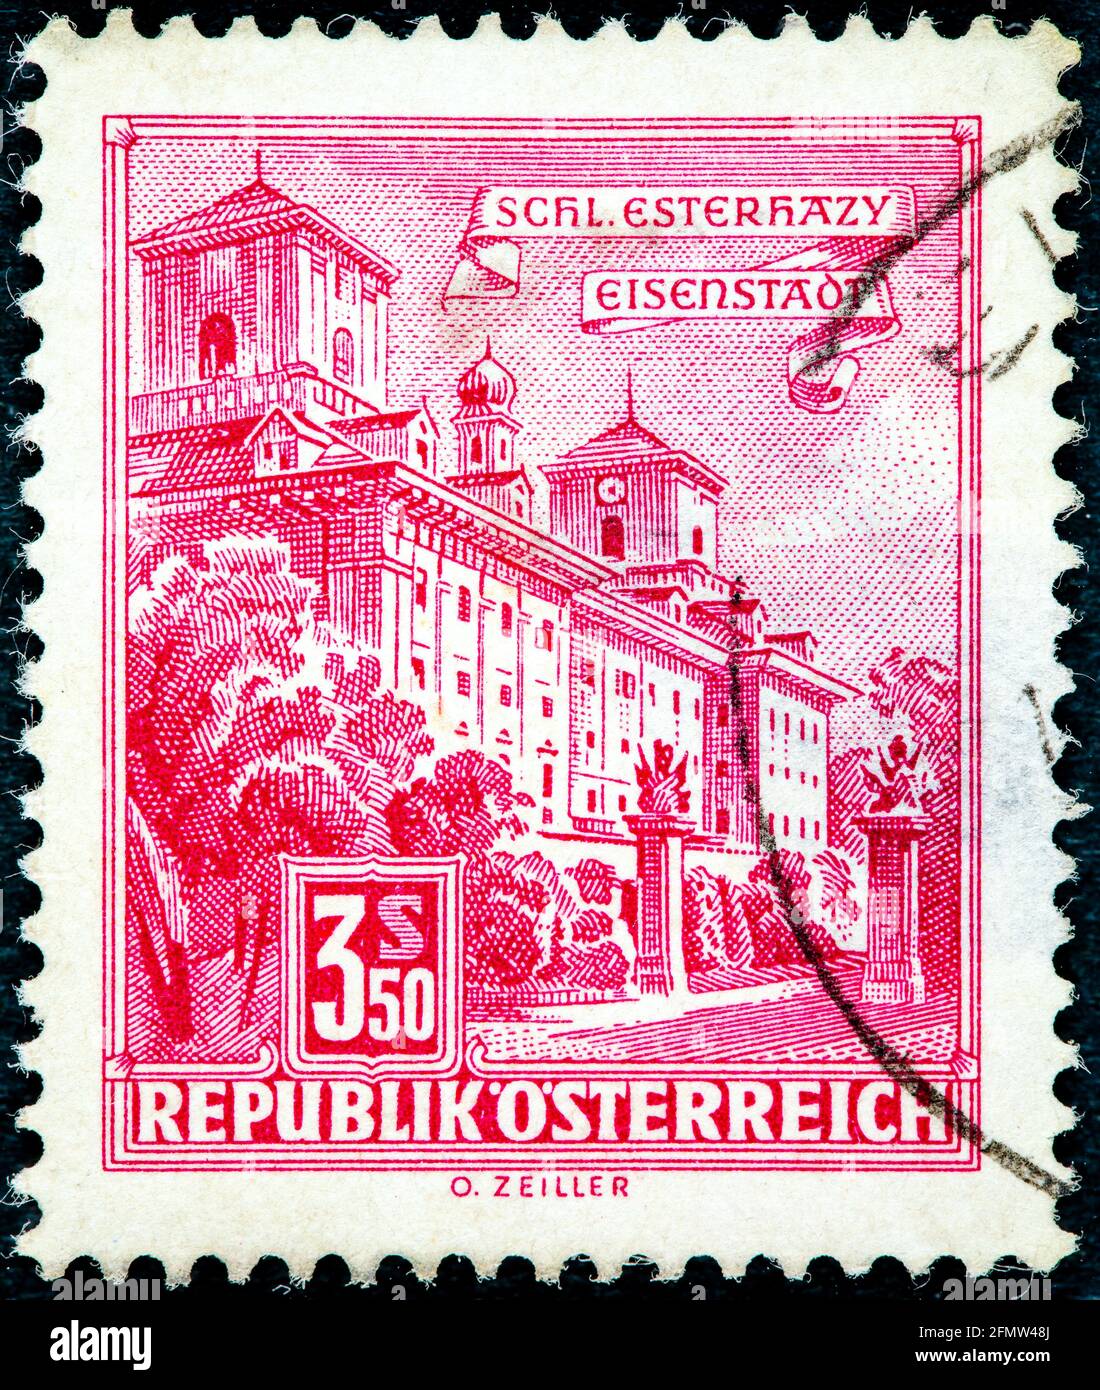 AUTRICHE - VERS 1962: Timbre-poste annulé imprimé par l'Autriche, qui montre le palais Esterhazy. Banque D'Images